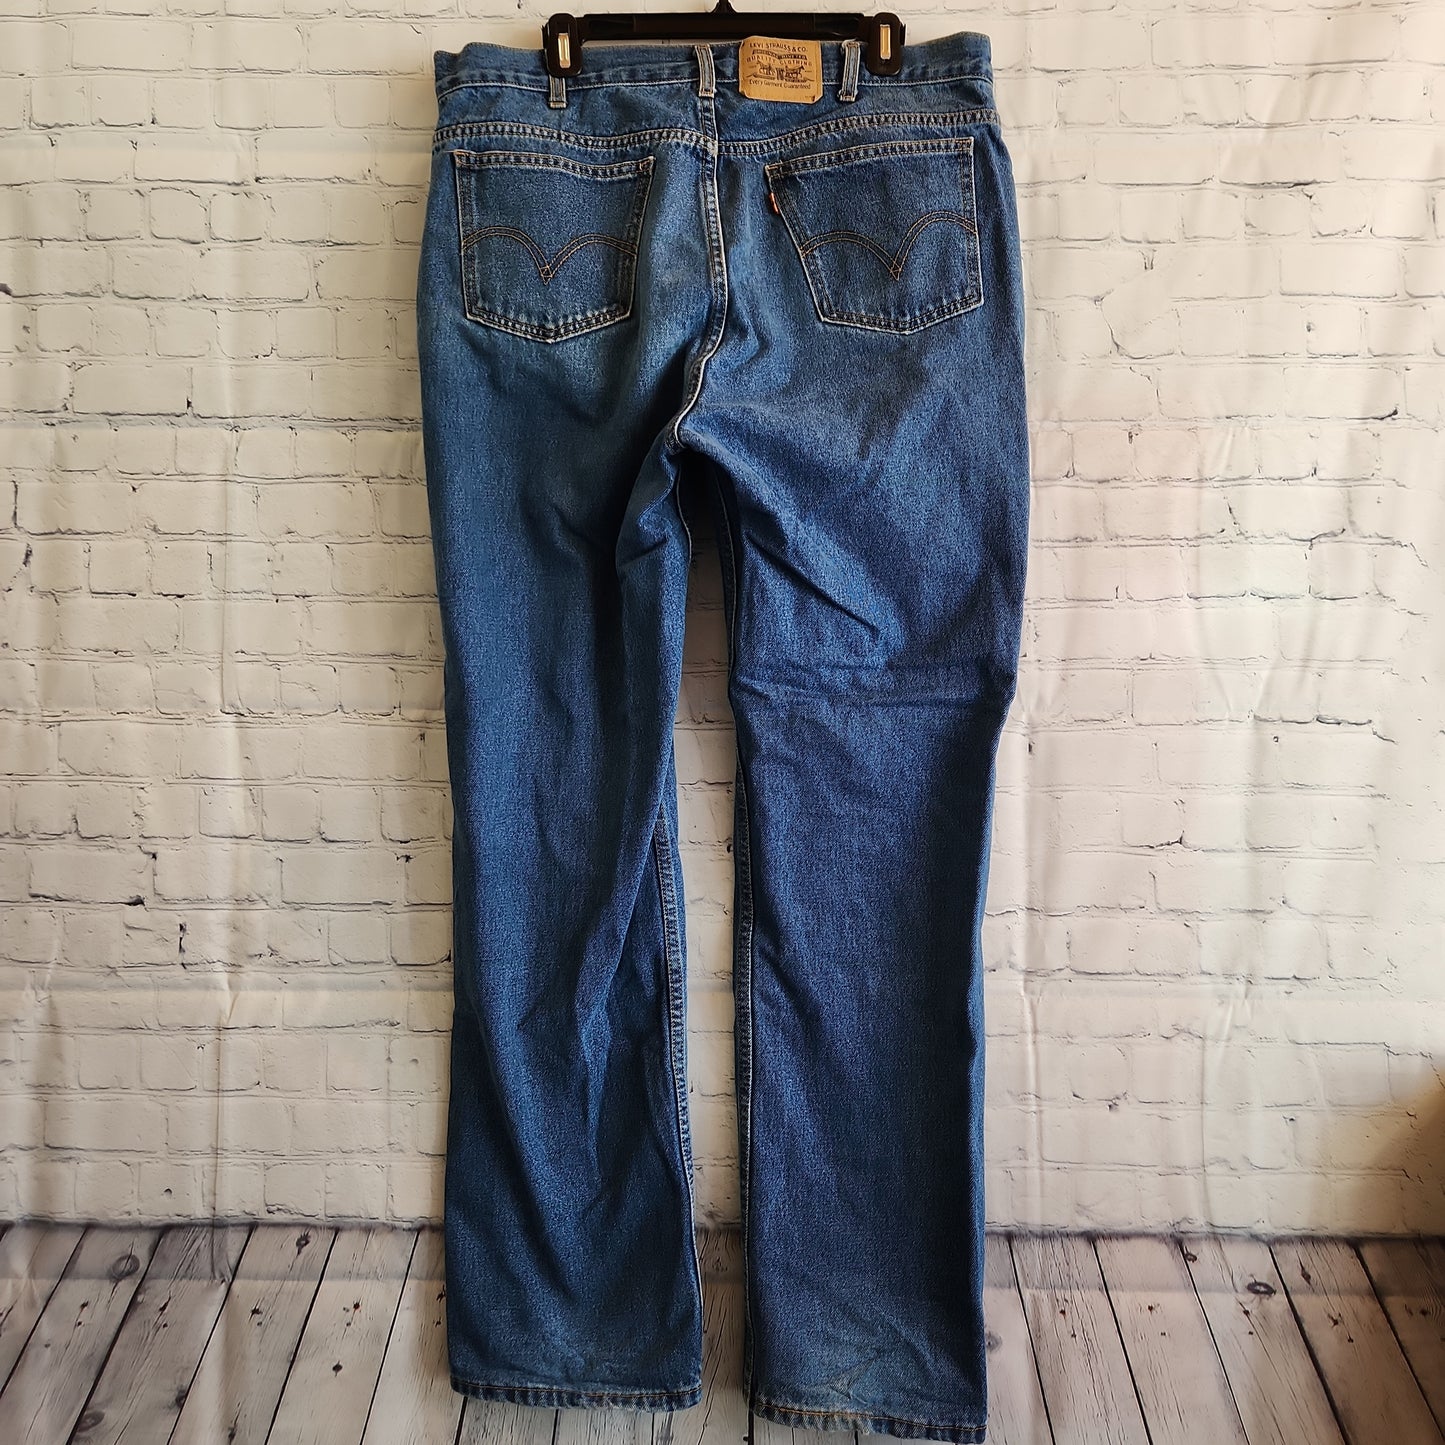 Vintage Levi's Orange Tab Jeans Light Washed - 38 x 34